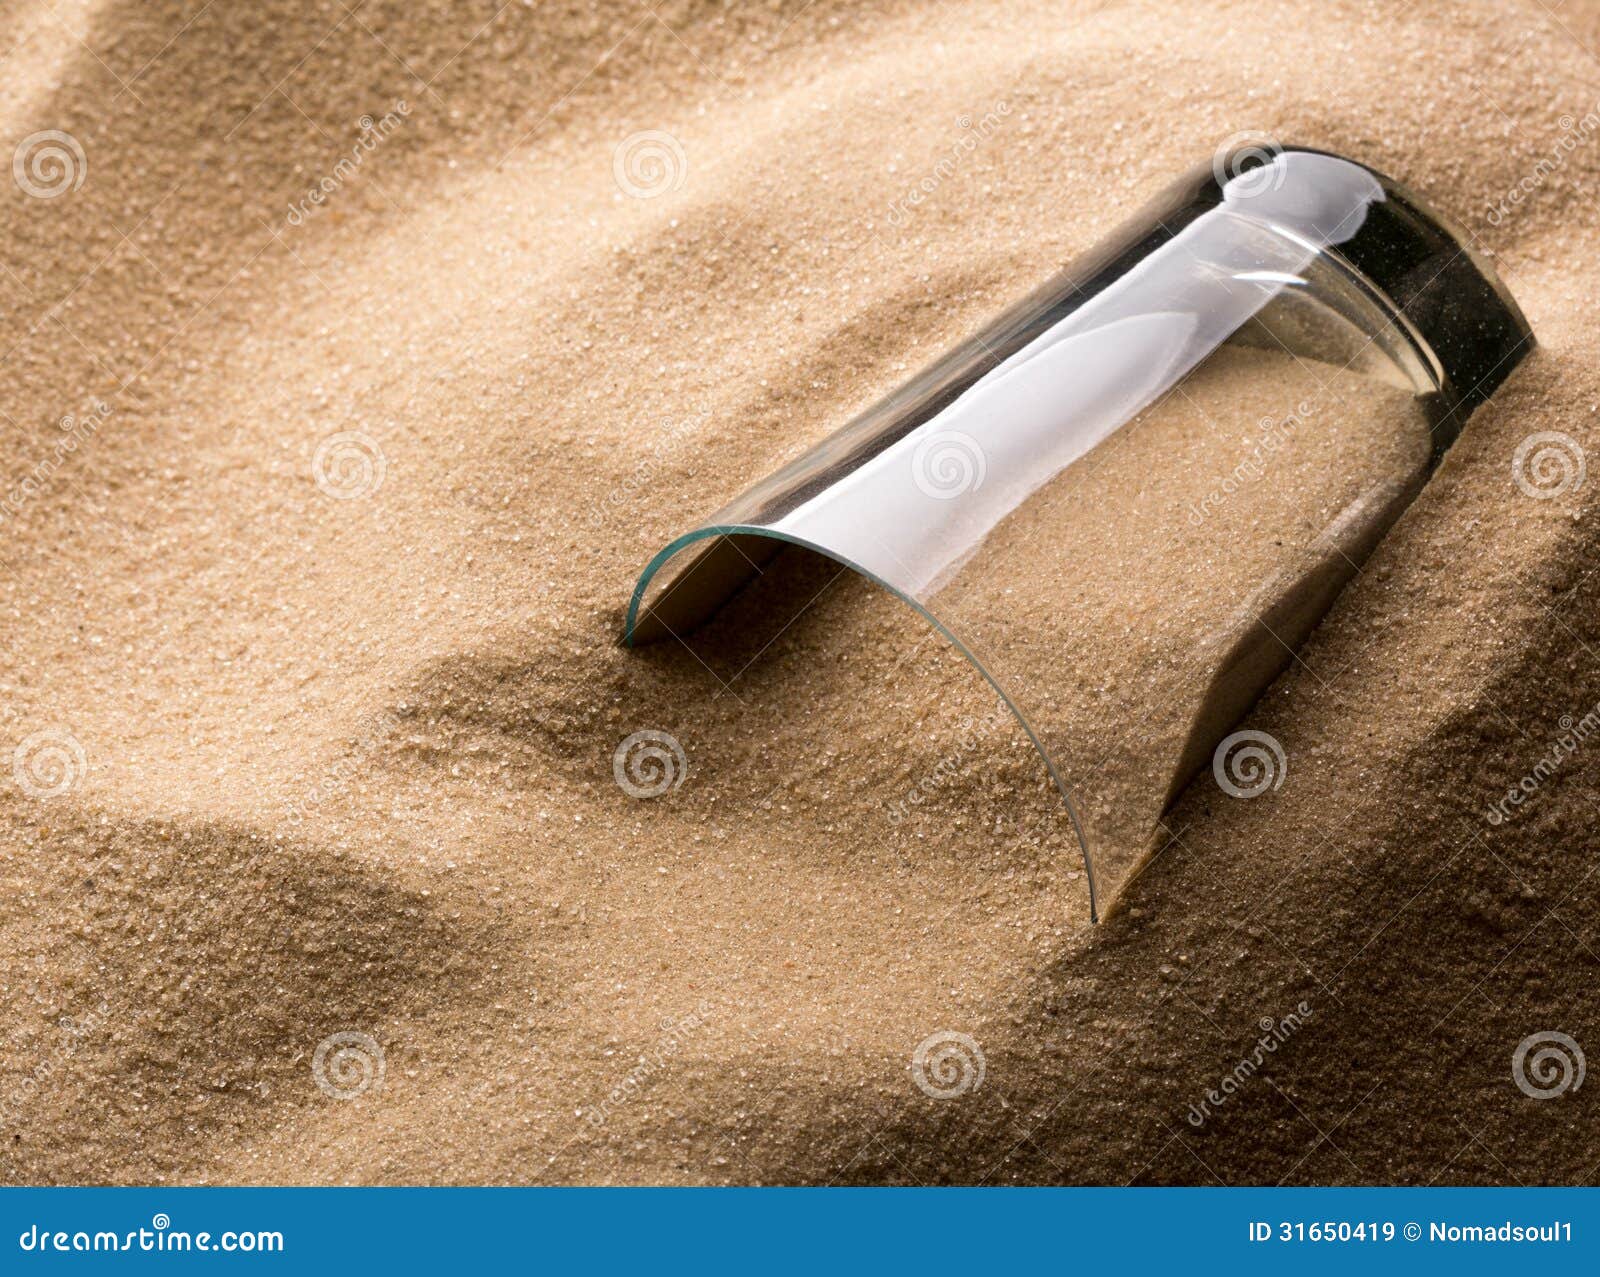 Monteur Toestand Cordelia Leeg glas in zand stock afbeelding. Image of begraven - 31650419